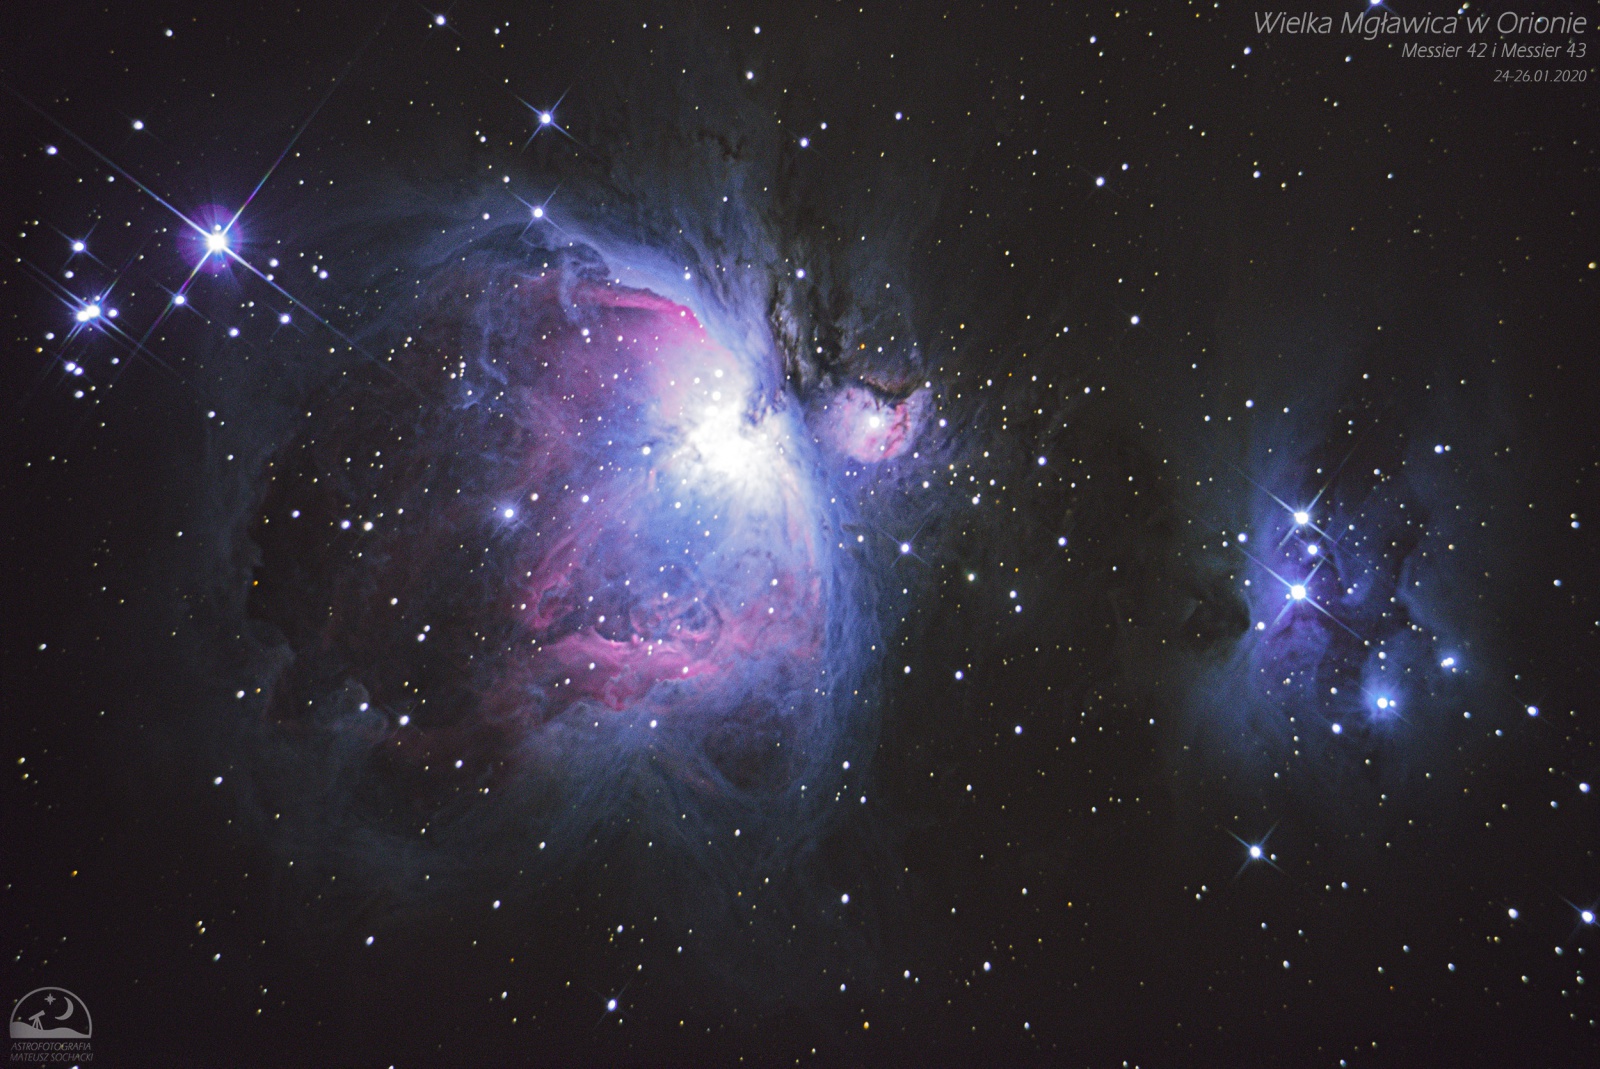 Wielka Mgławica w Orionie - Wariant poprawiony - pomniejszony.jpg